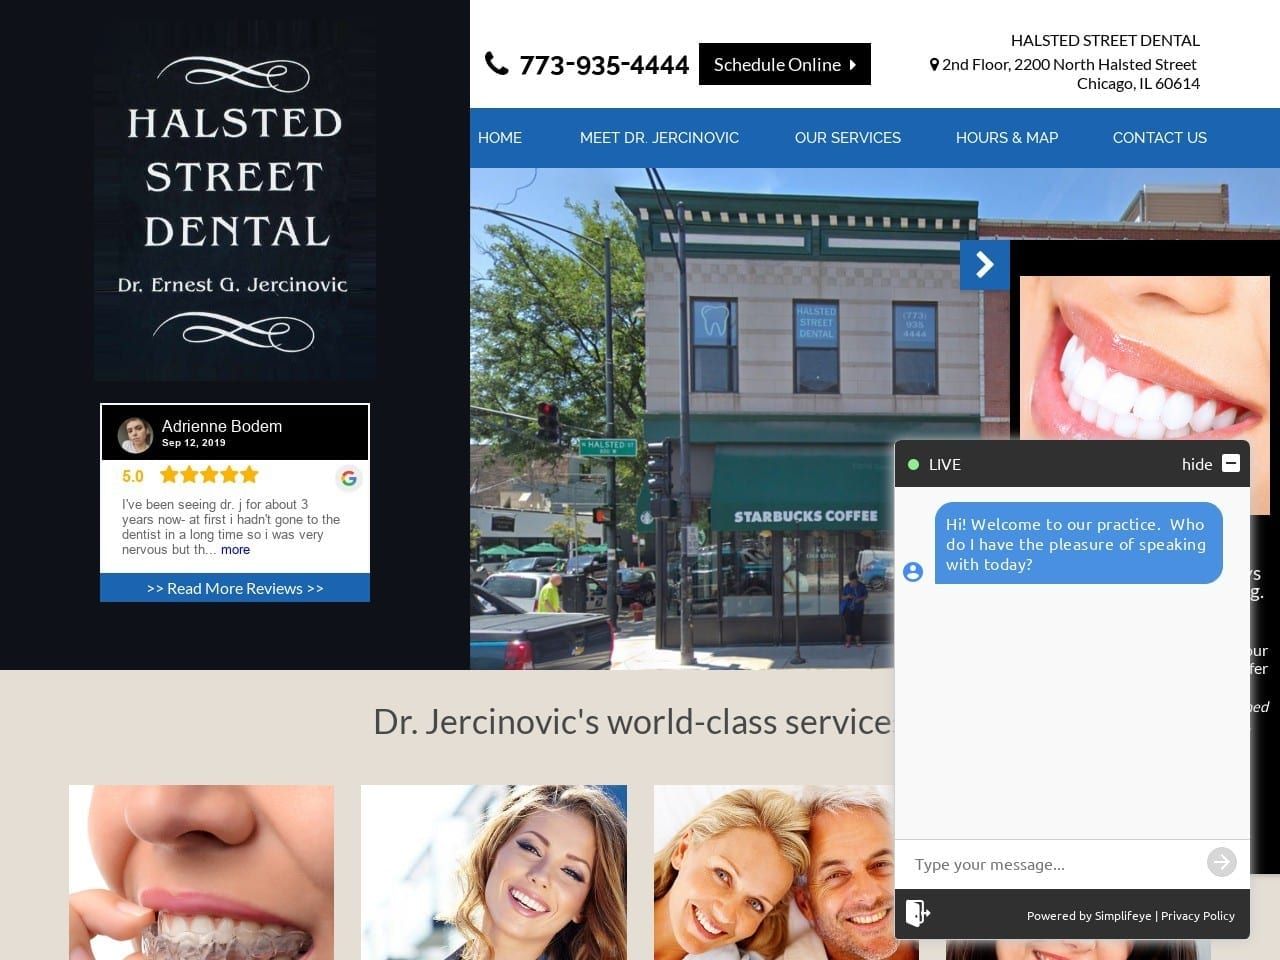 Halsted Street Dental Website Screenshot from halstedstreetdental.com